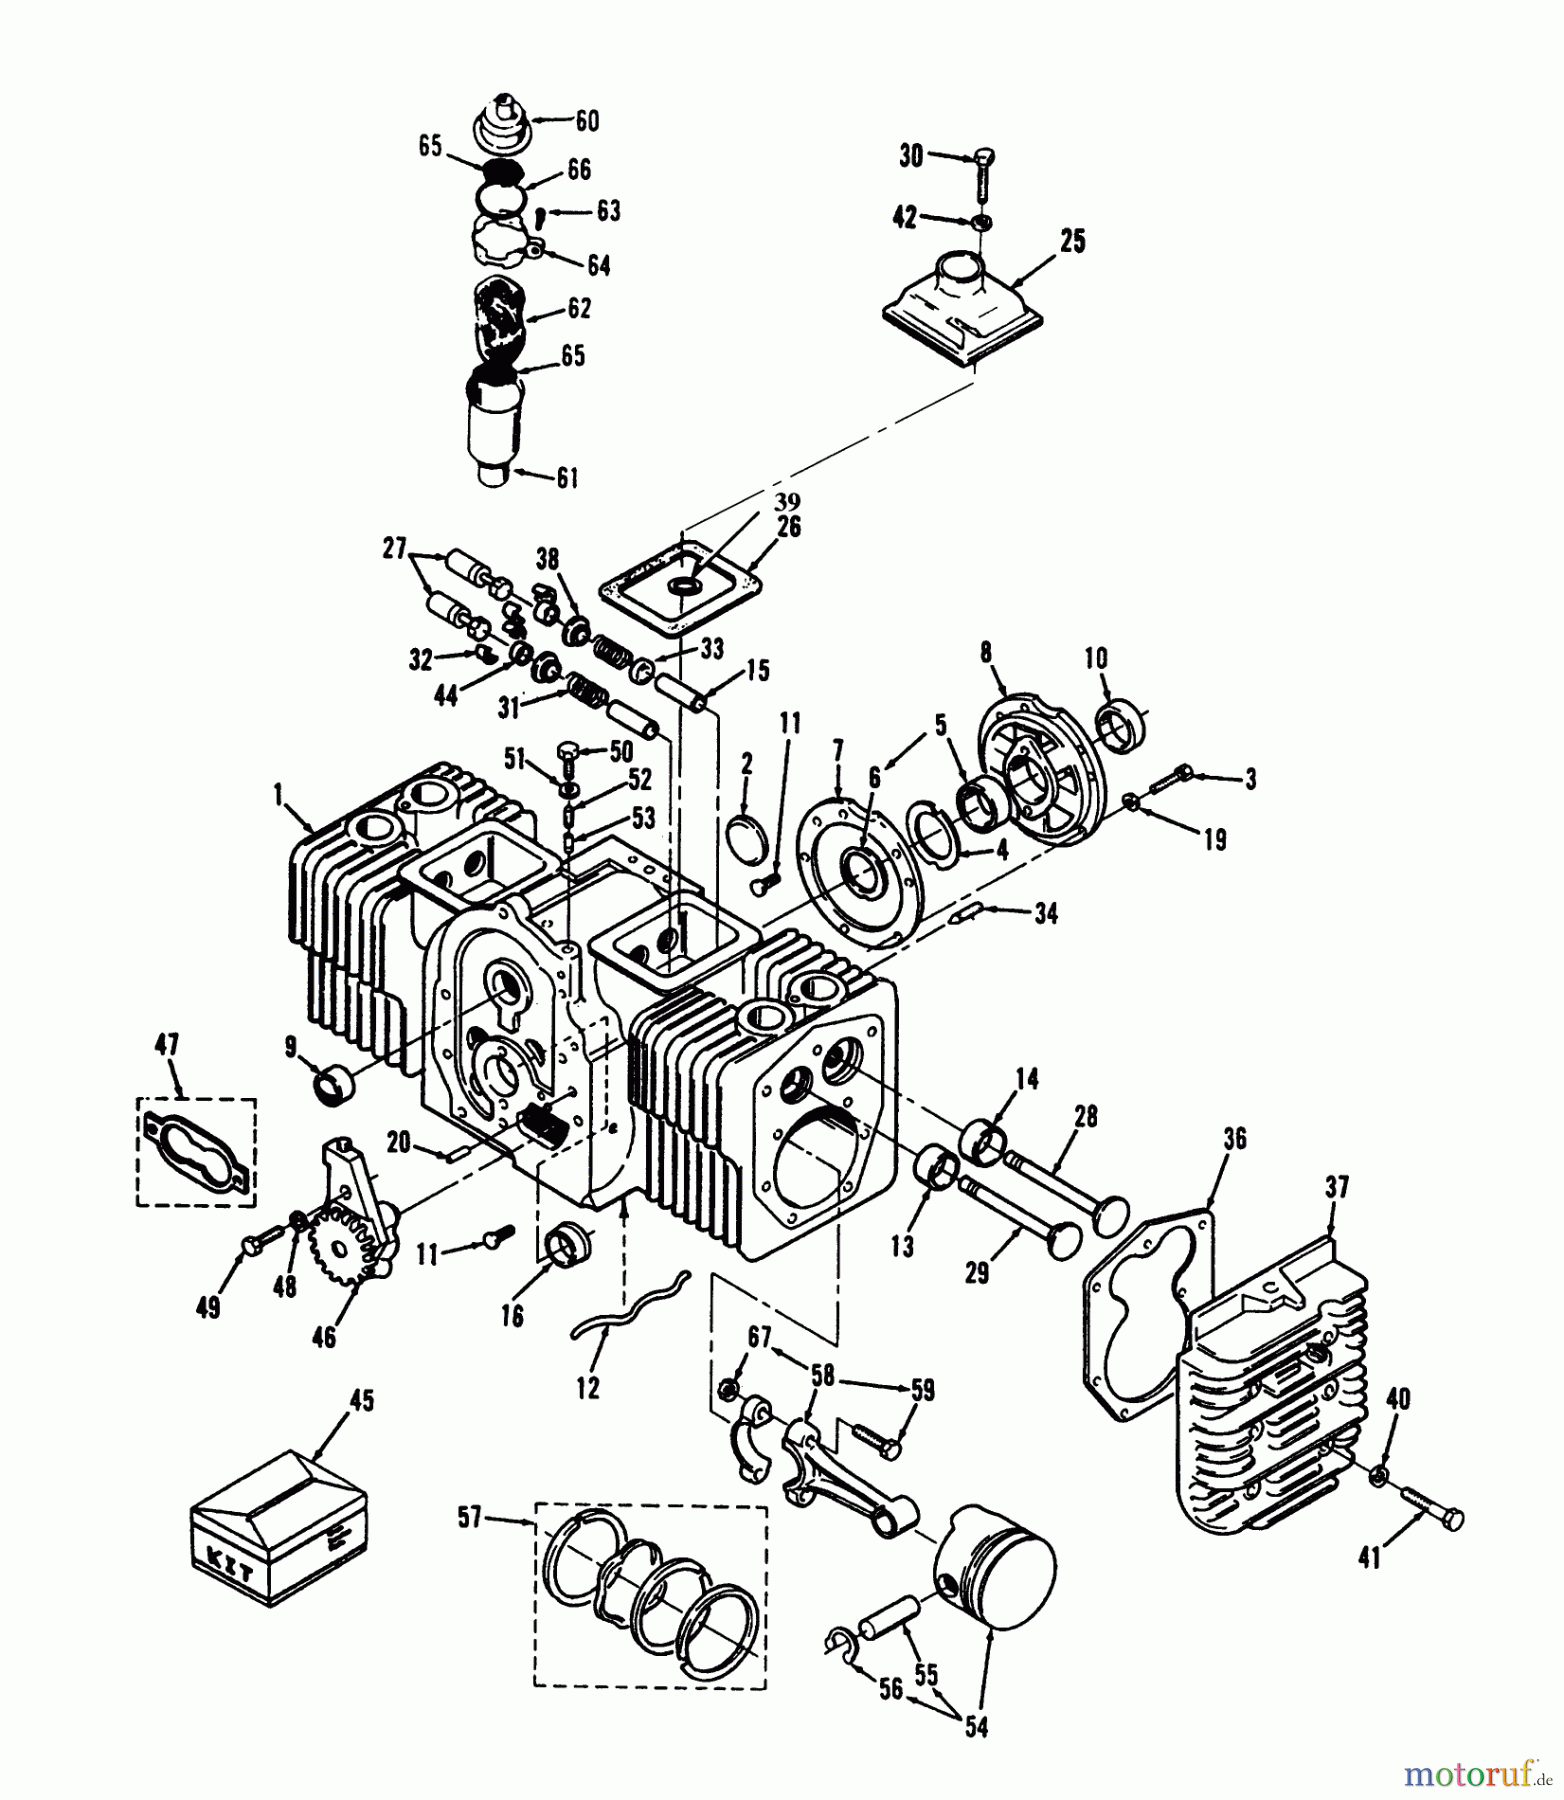  Toro Neu Mowers, Lawn & Garden Tractor Seite 1 73501 (520-H) - Toro 520-H Garden Tractor, 1993 (39000001-39999999) ENGINE CYLINDER BLOCK